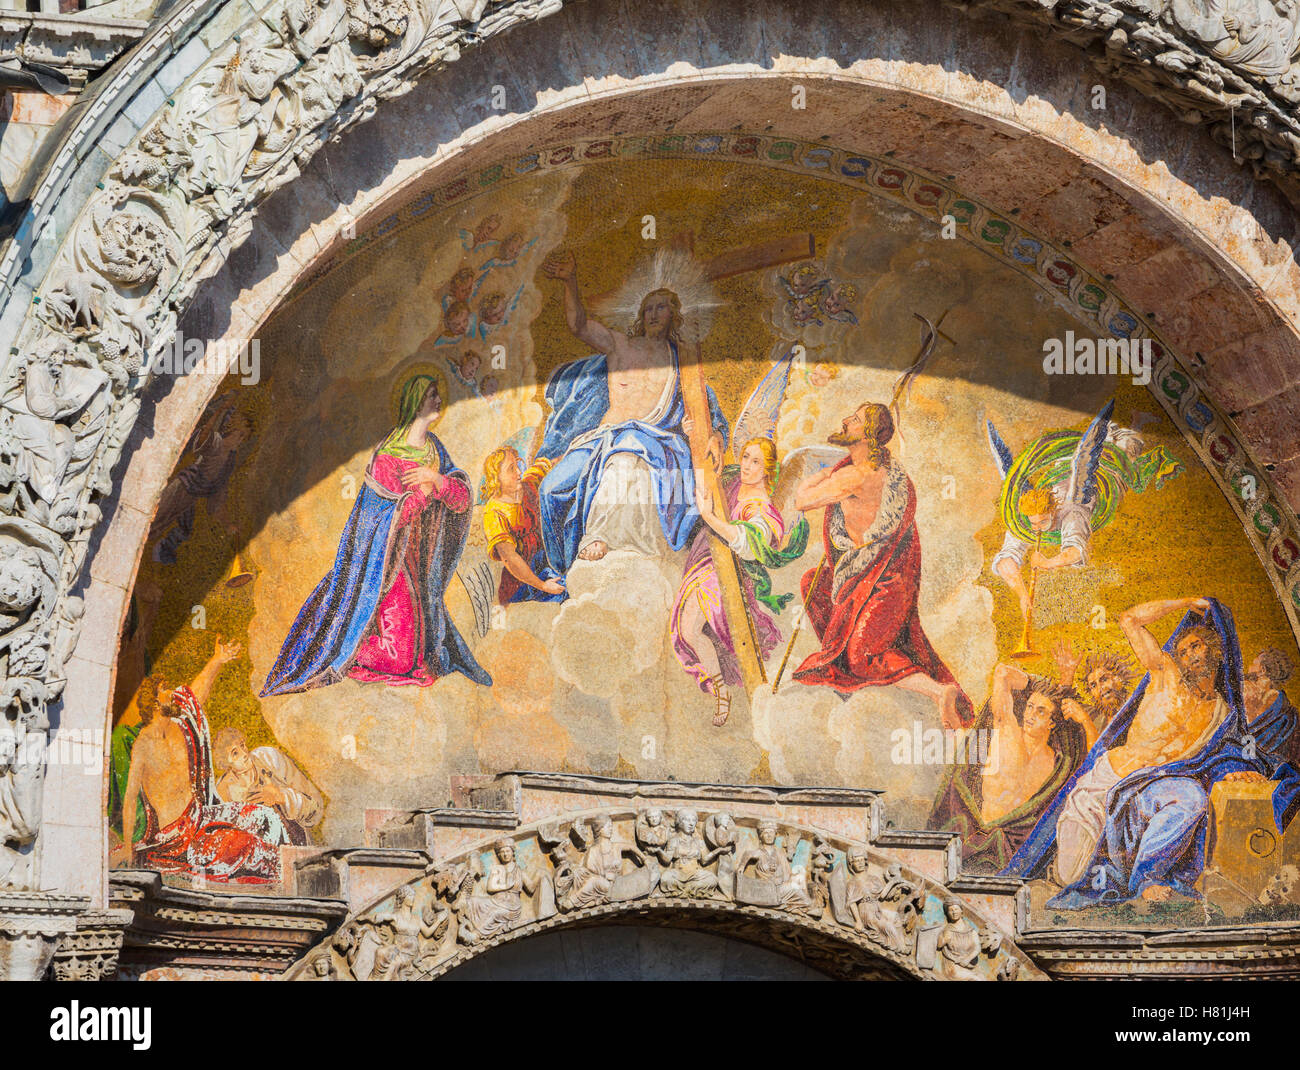 Venezia, Provincia di Venezia, regione Veneto, Italia. Il giudizio ultimo mosaico sopra l'ingresso principale della Basilica di San Marco. Foto Stock